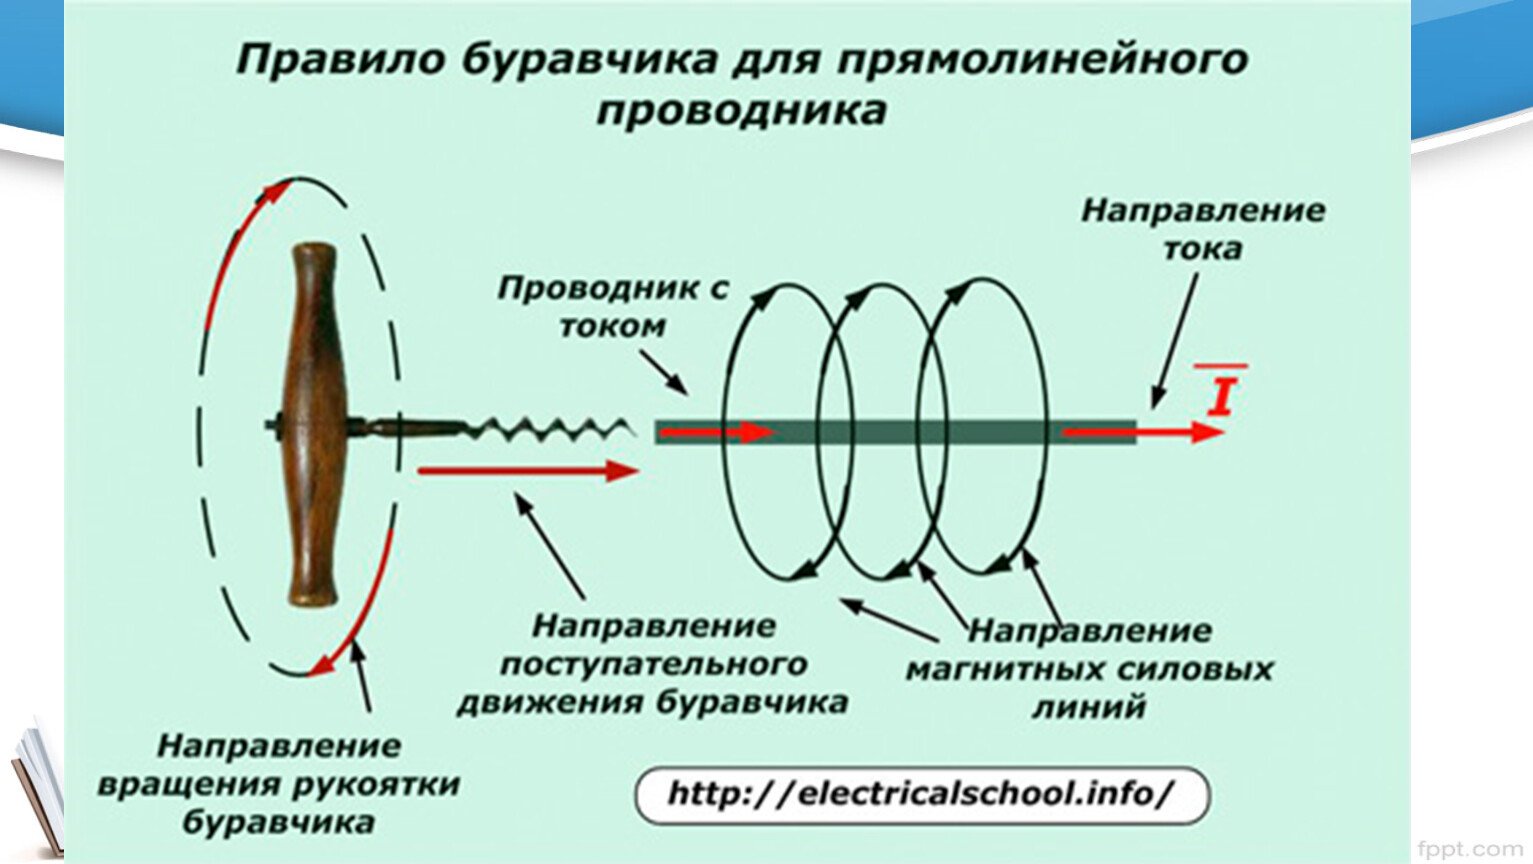 Направление тока в проводнике правило буравчика. Правило буравчика для прямолинейного проводника с током. Правило буравчика для прямолинейного проводника. Направление тока по правилу буравчика. Правило буравчика для проводника с током.